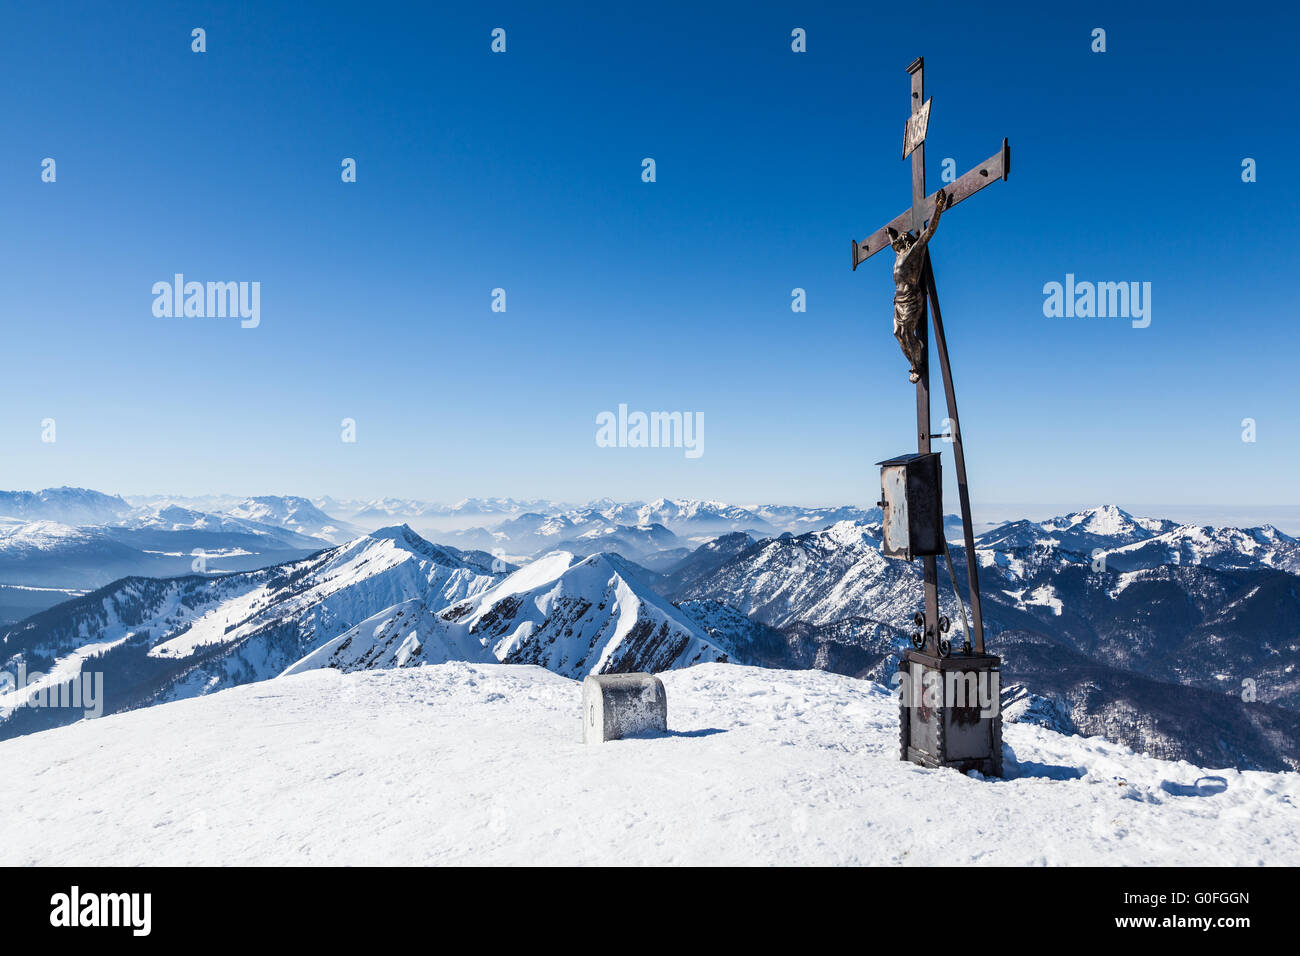 winterly summit cross with mountain range Stock Photo